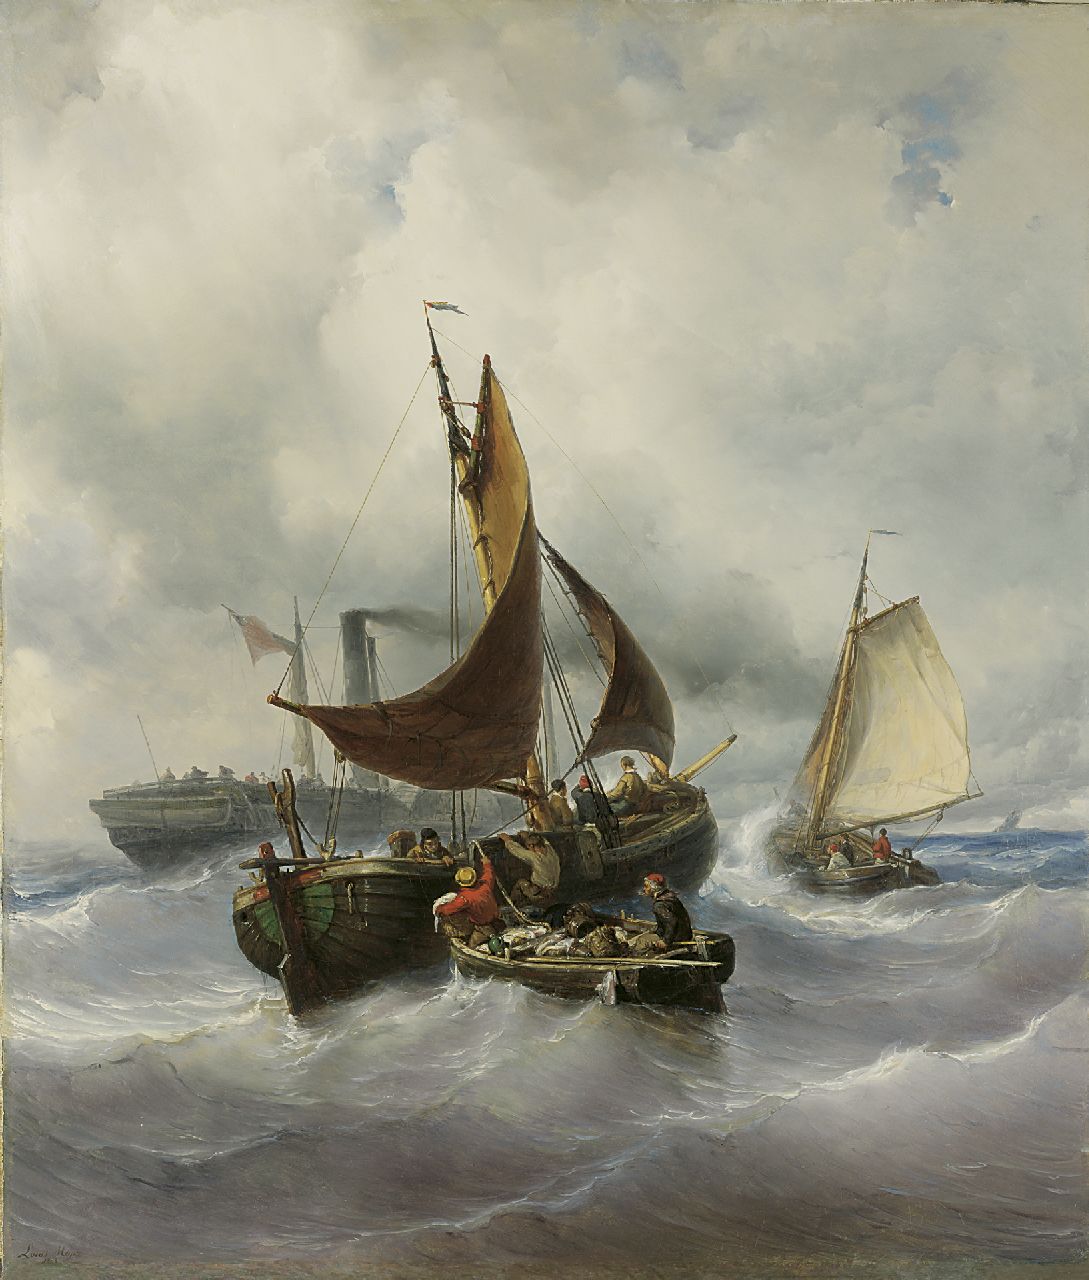 Meijer J.H.L.  | Johan Hendrik 'Louis' Meijer, Het overhevelen van de vangst, olieverf op doek 147,3 x 125,5 cm, gesigneerd linksonder en gedateerd 1848